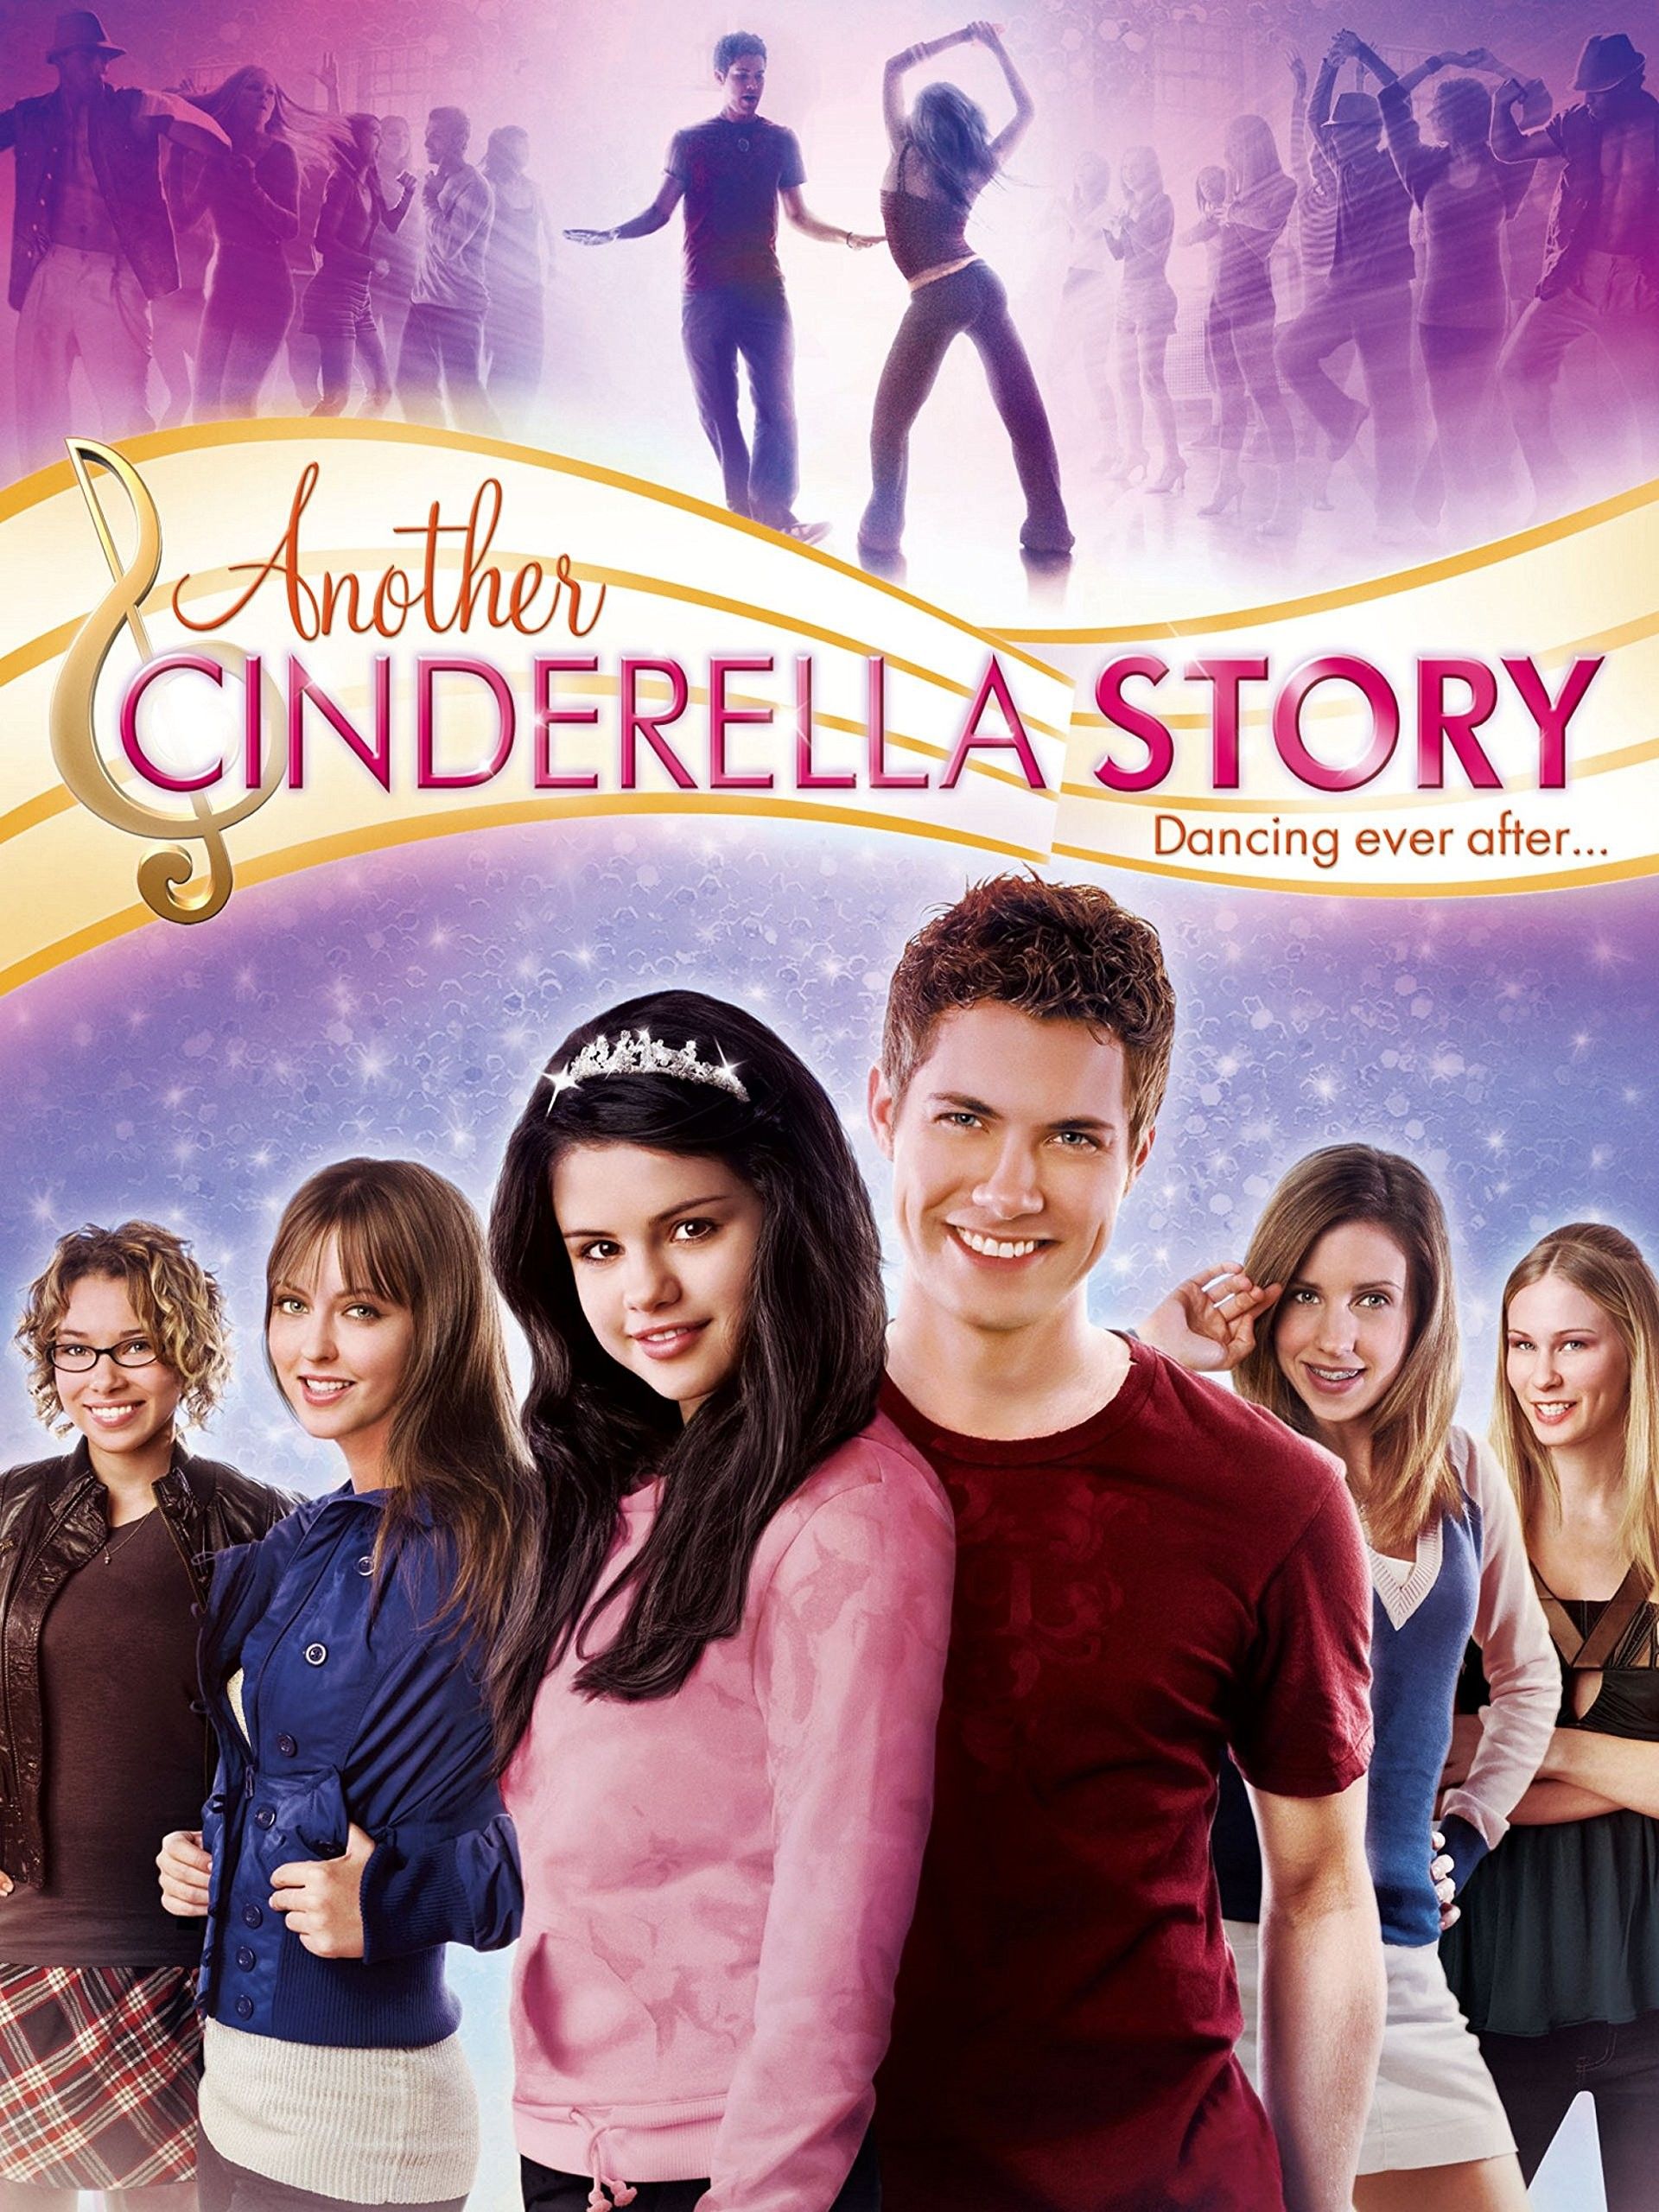 6 Film Terinspirasi Cerita Dongeng "Cinderella", Sudahkah 